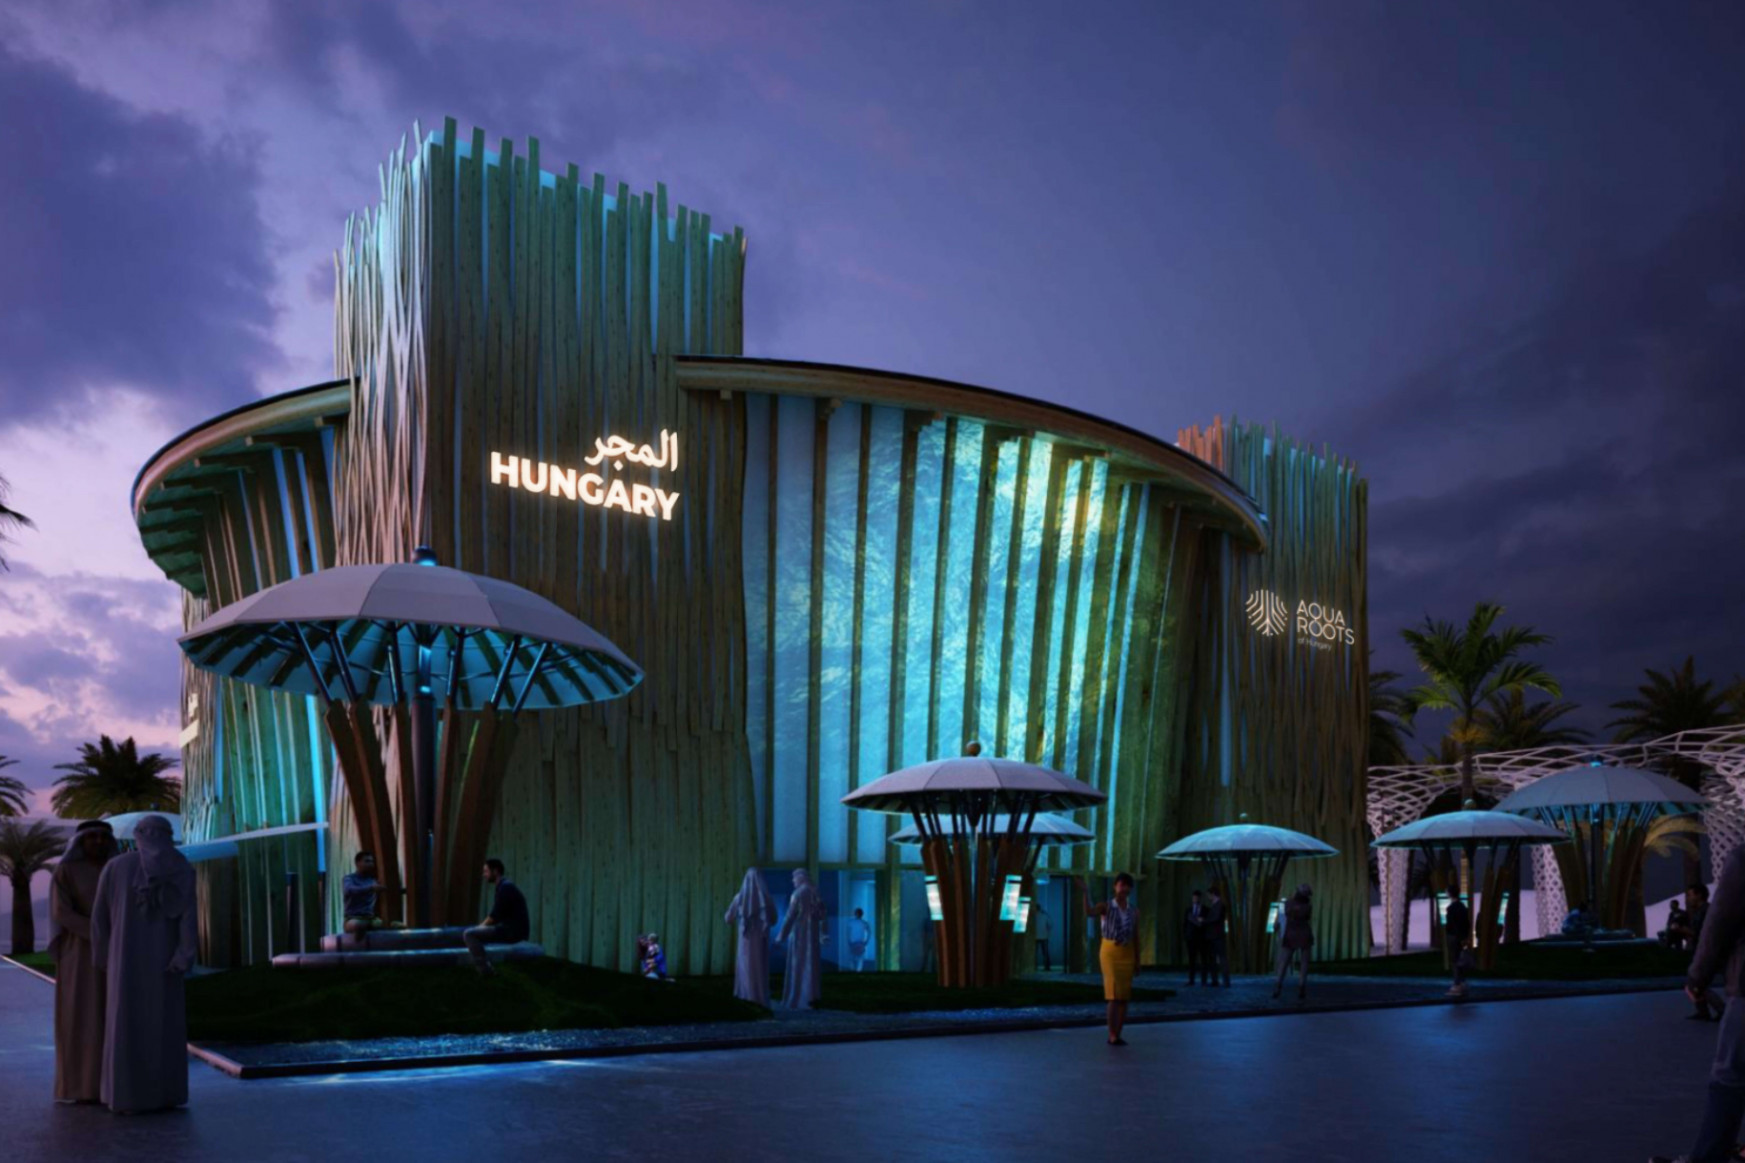 Elkészült a dubaji világkiállítás magyar pavilonja, közel 11,3 milliárd forintból